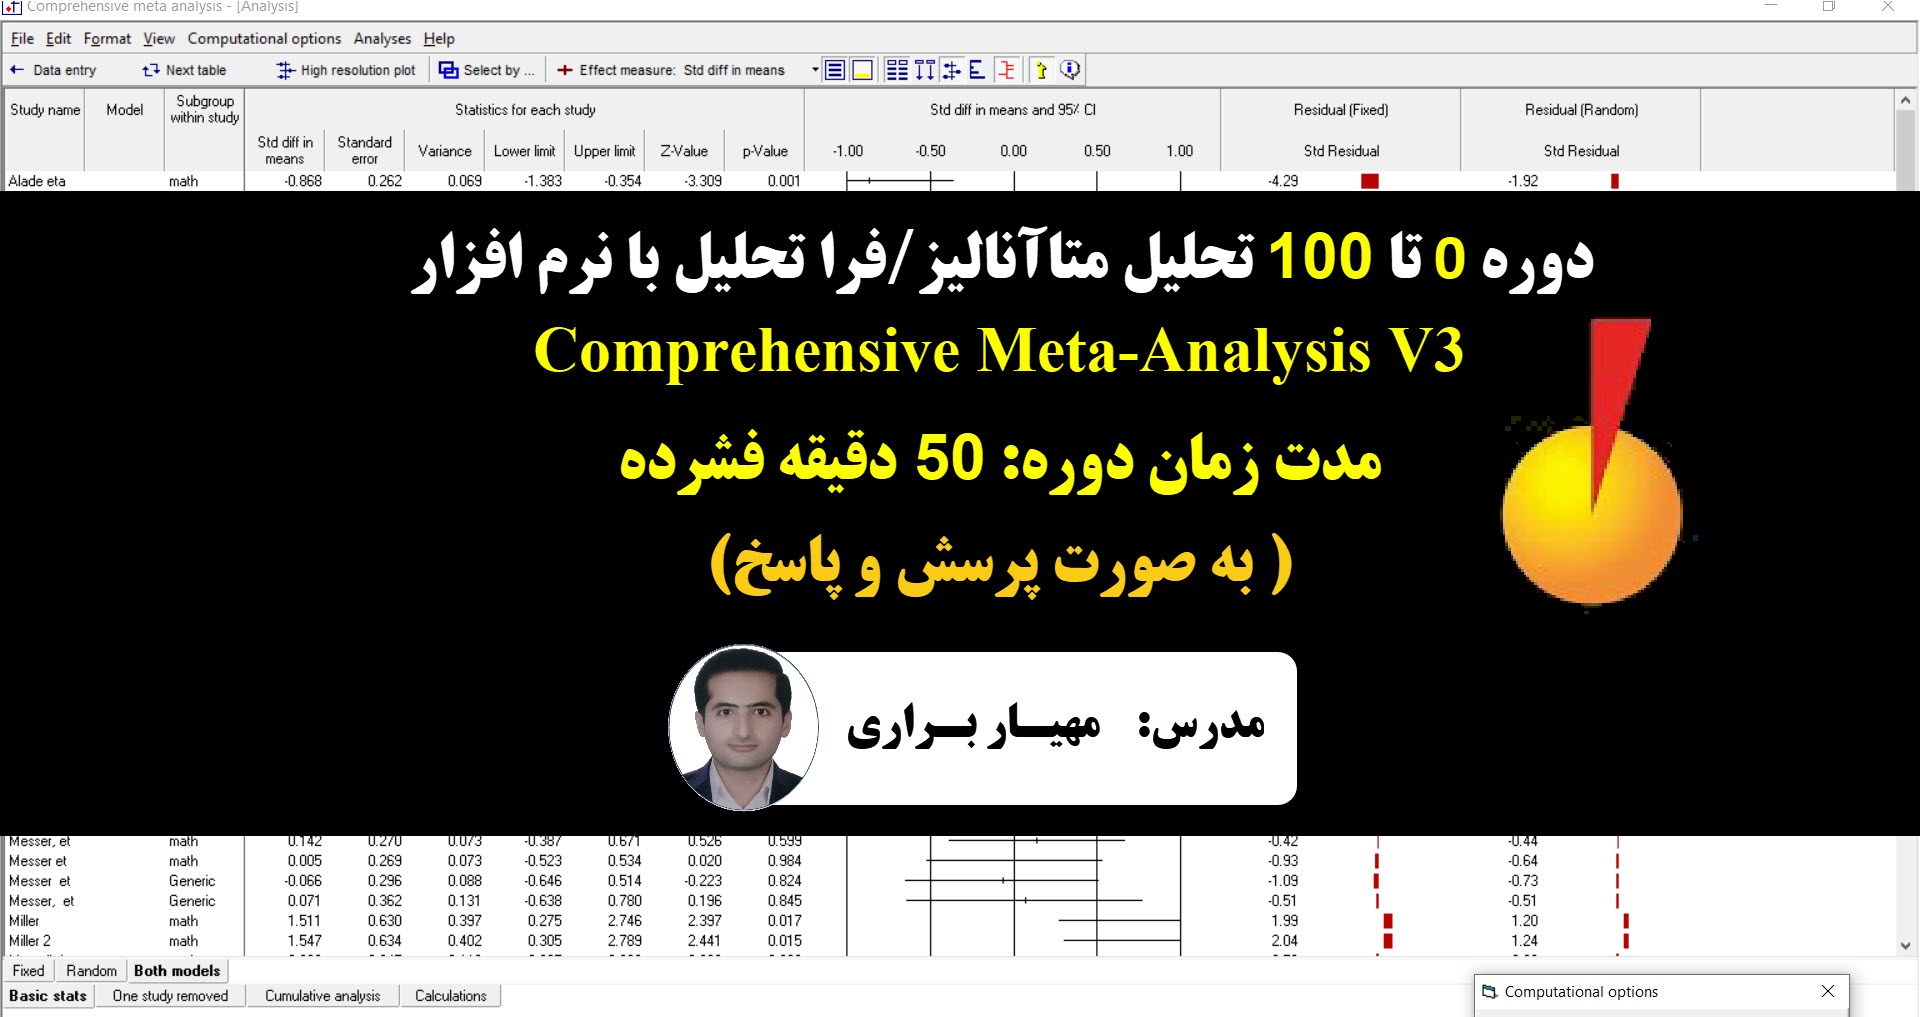 آموزش نرم افزار comprehensive meta-analysis ,دانلود نرم افزار cma3 ,آموزش متاآنالیز با نرم افزار stata